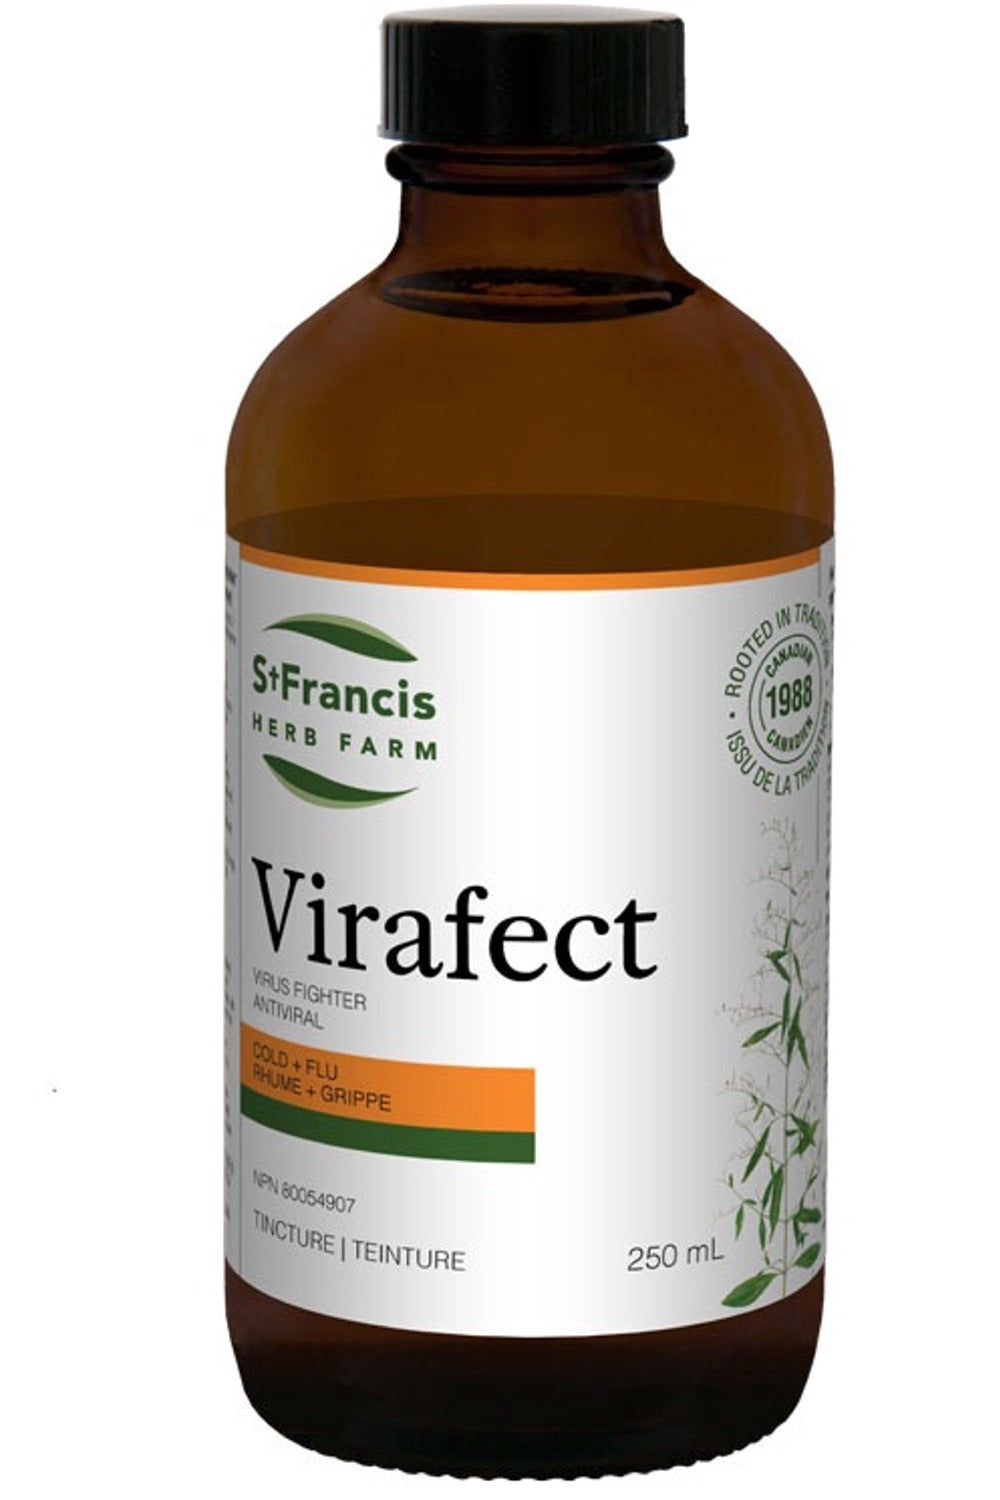 ST FRANCIS HERB FARM Virafect (250 ml)